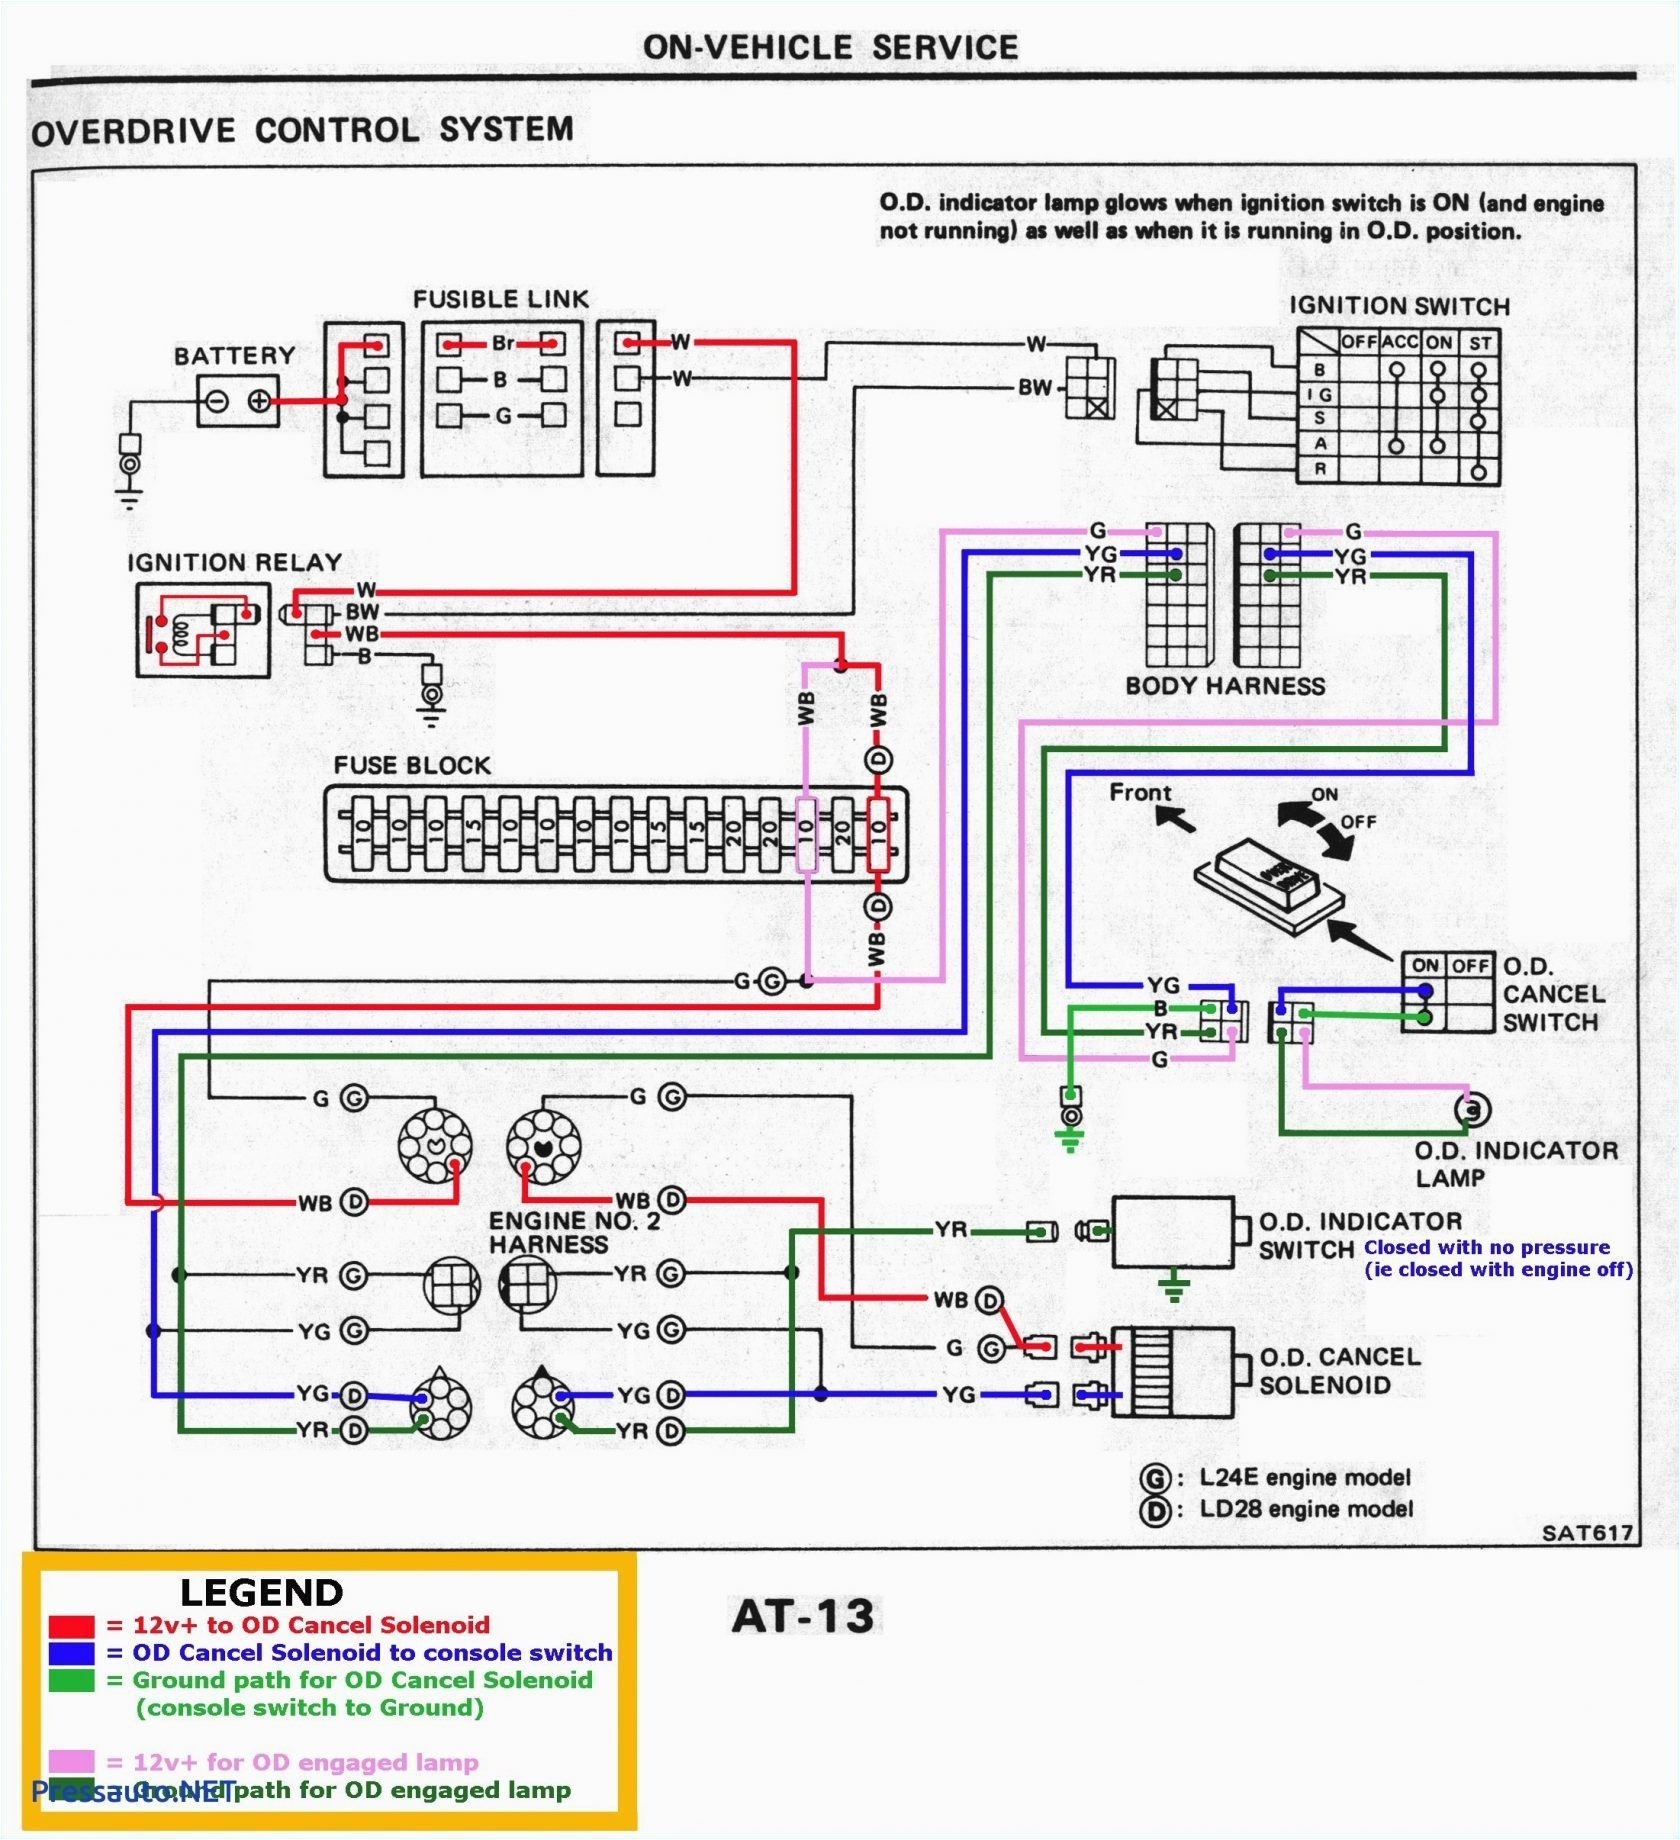 whistle wiring schematics wiring diagram view whistle wiring schematics